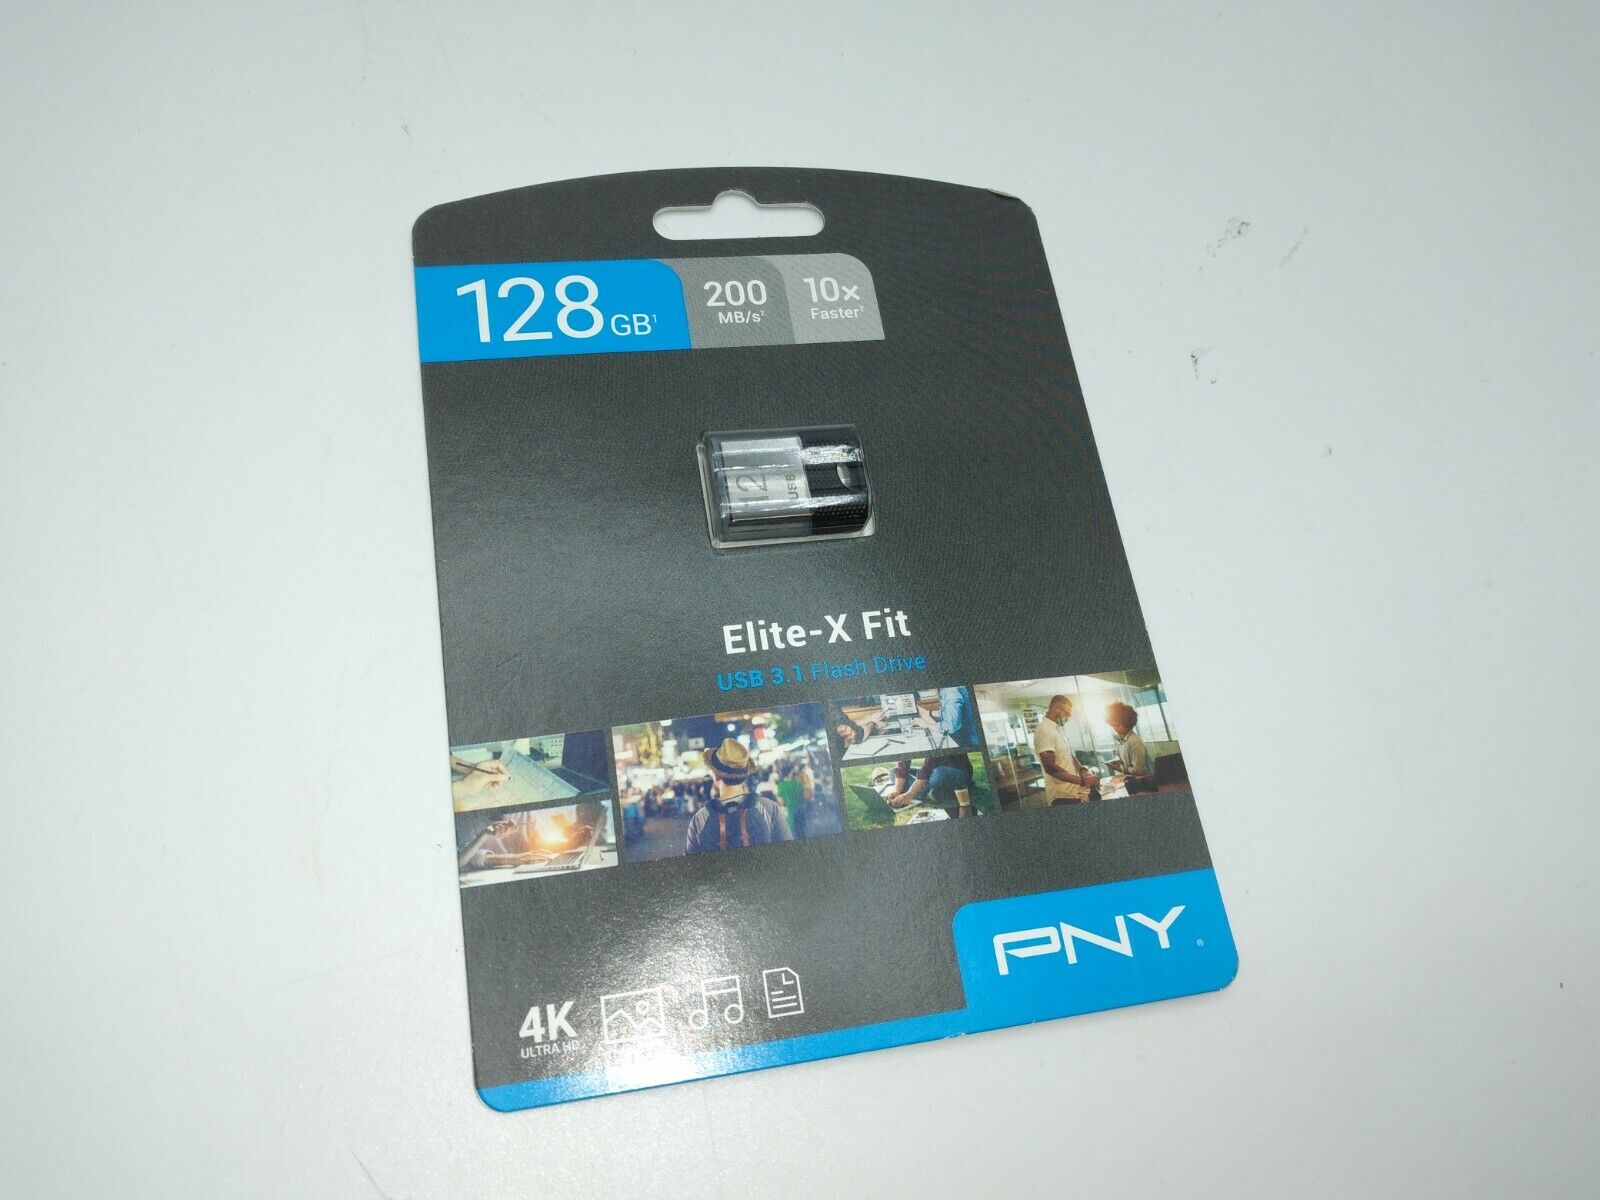 PNY P-FDI128EXFIT-GE 128GB Elite-X Fit USB 3.1 Flash Drive 10x Faster 4K -NIB